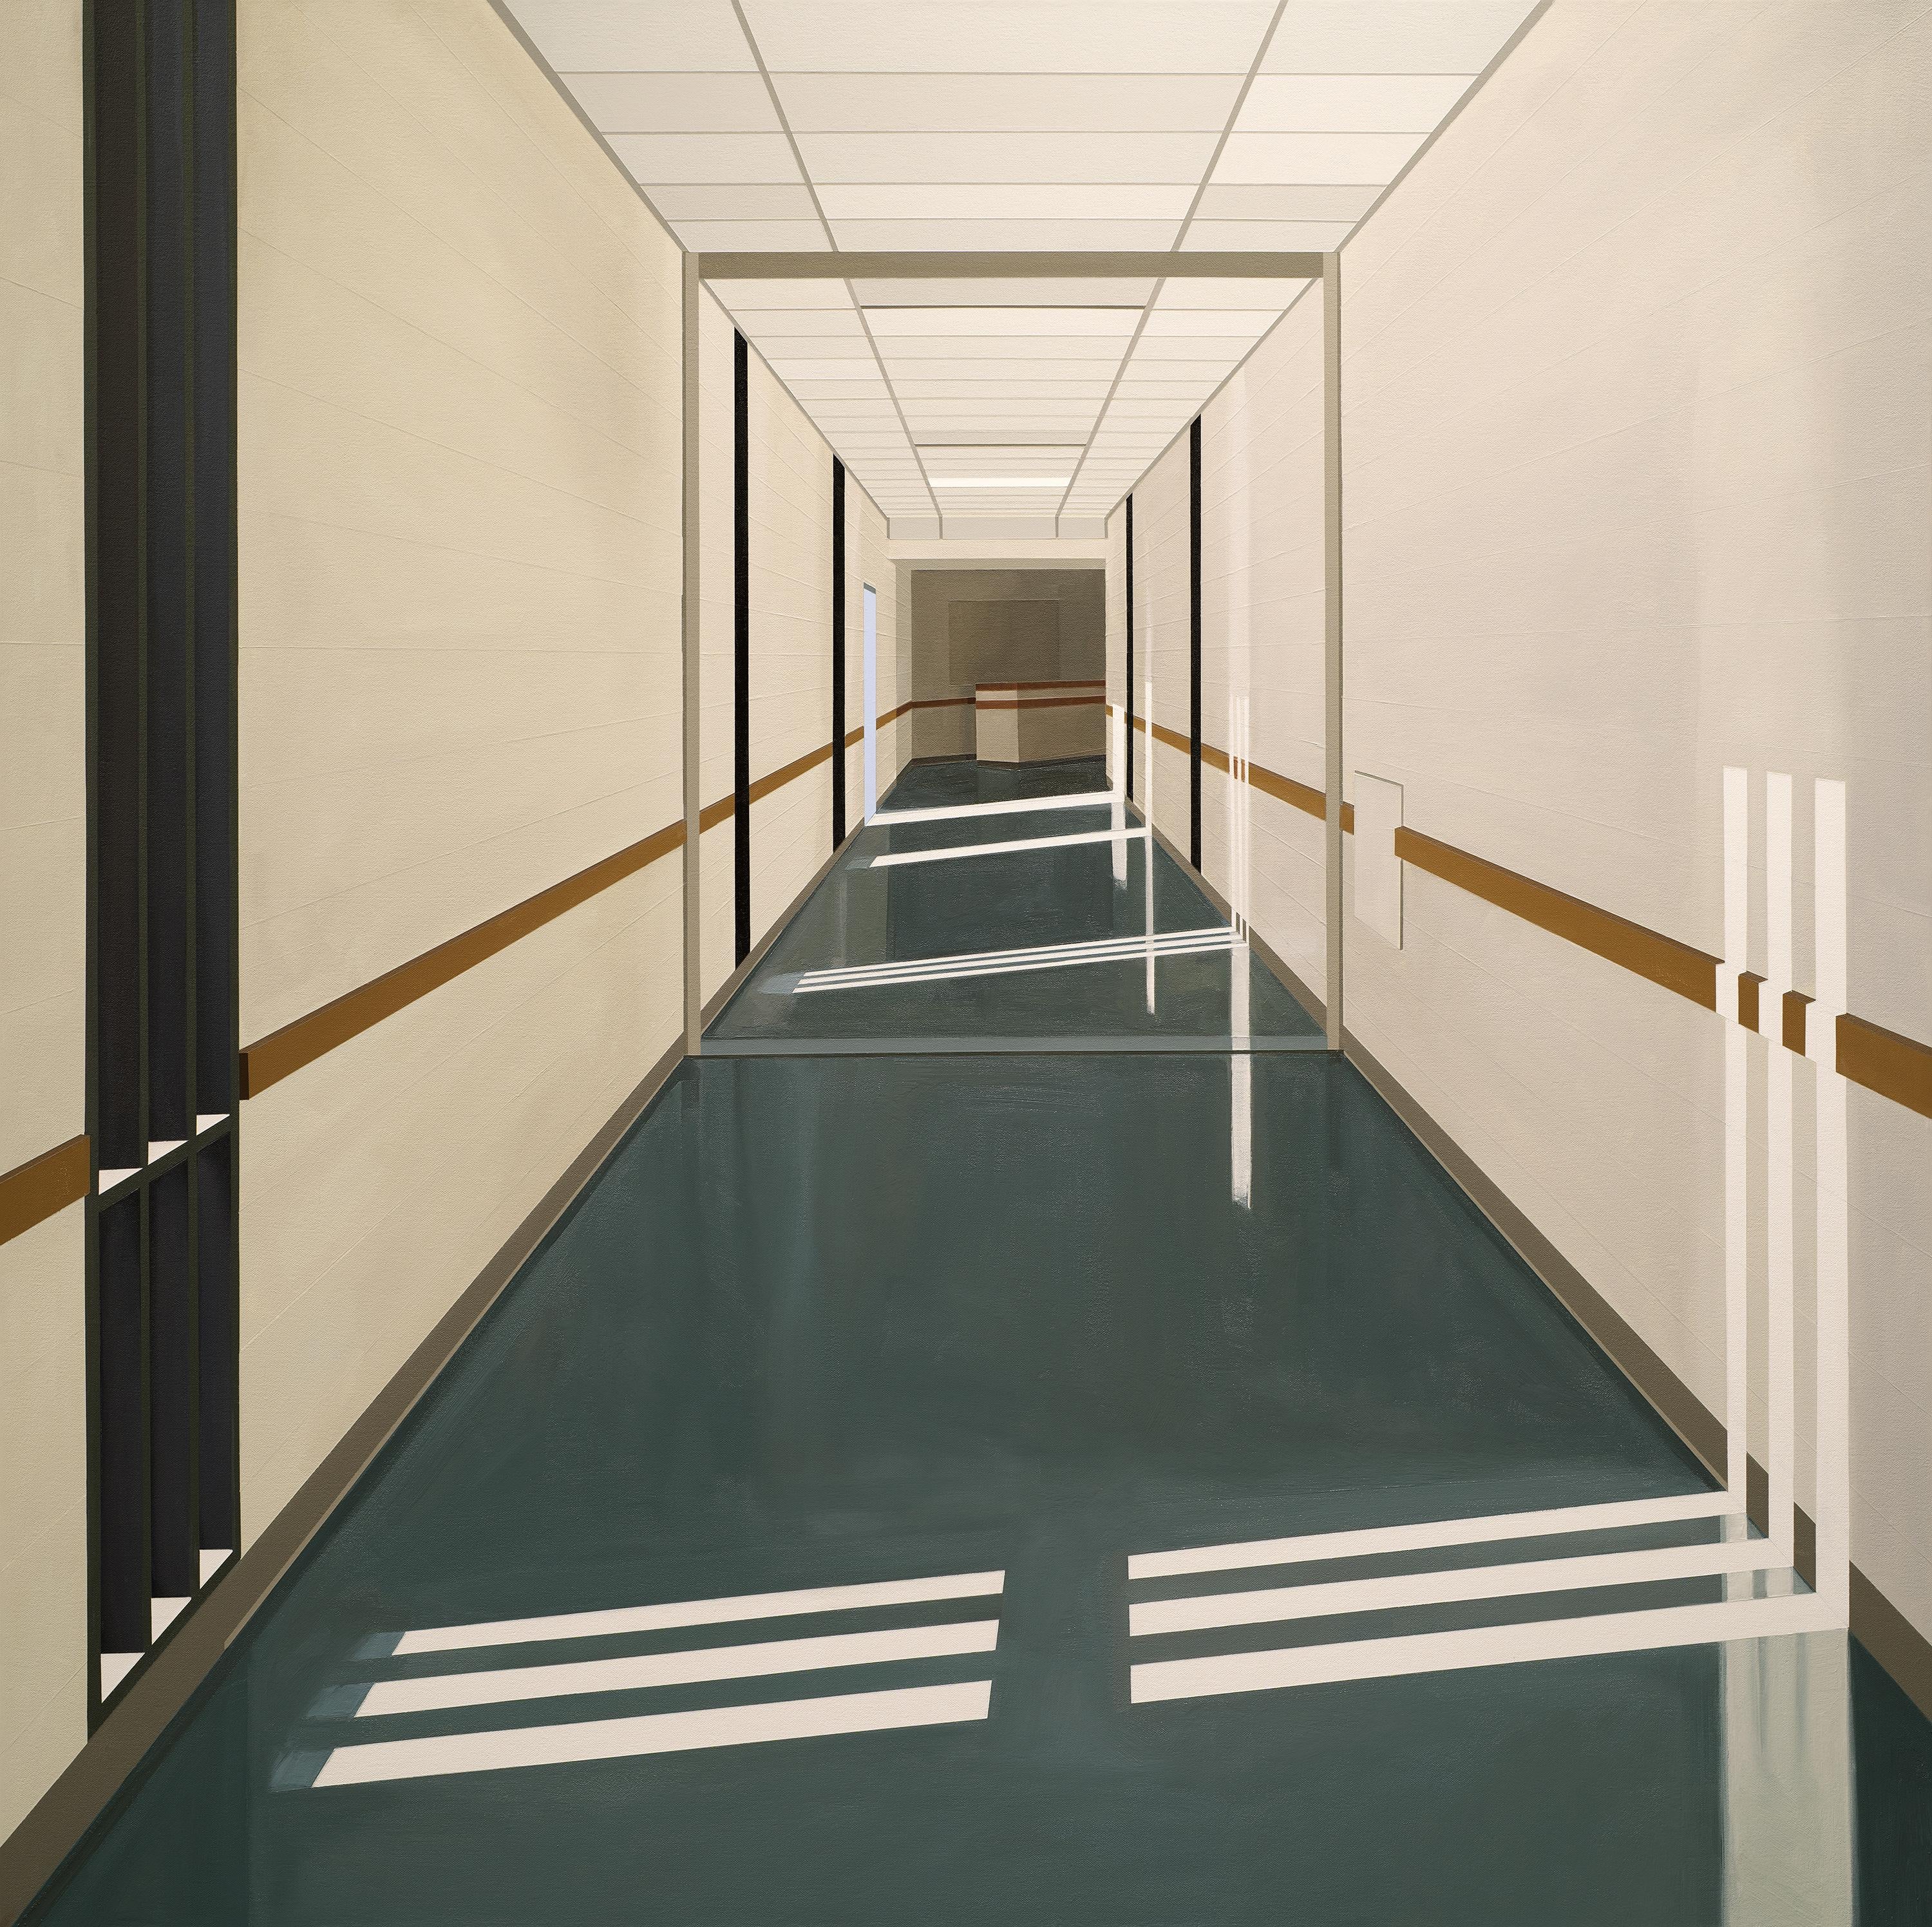 Corridor (facadémie fermée, campus pour jeunes de San Diego) - Painting de Sarah McKenzie